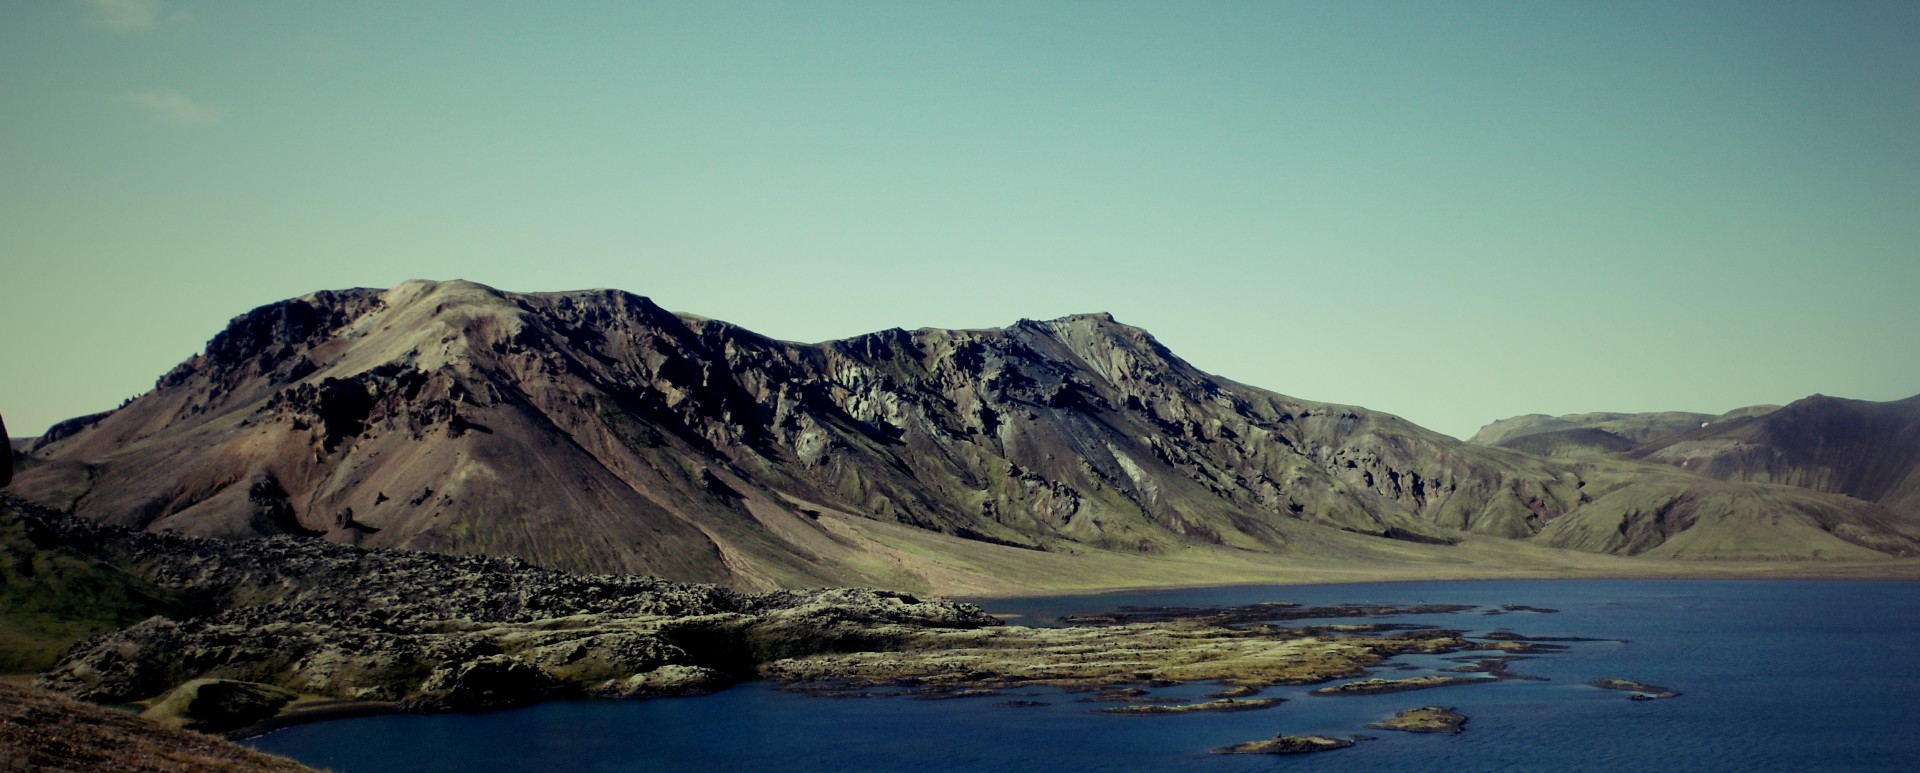 Landmannalaugar - Þórsmörk